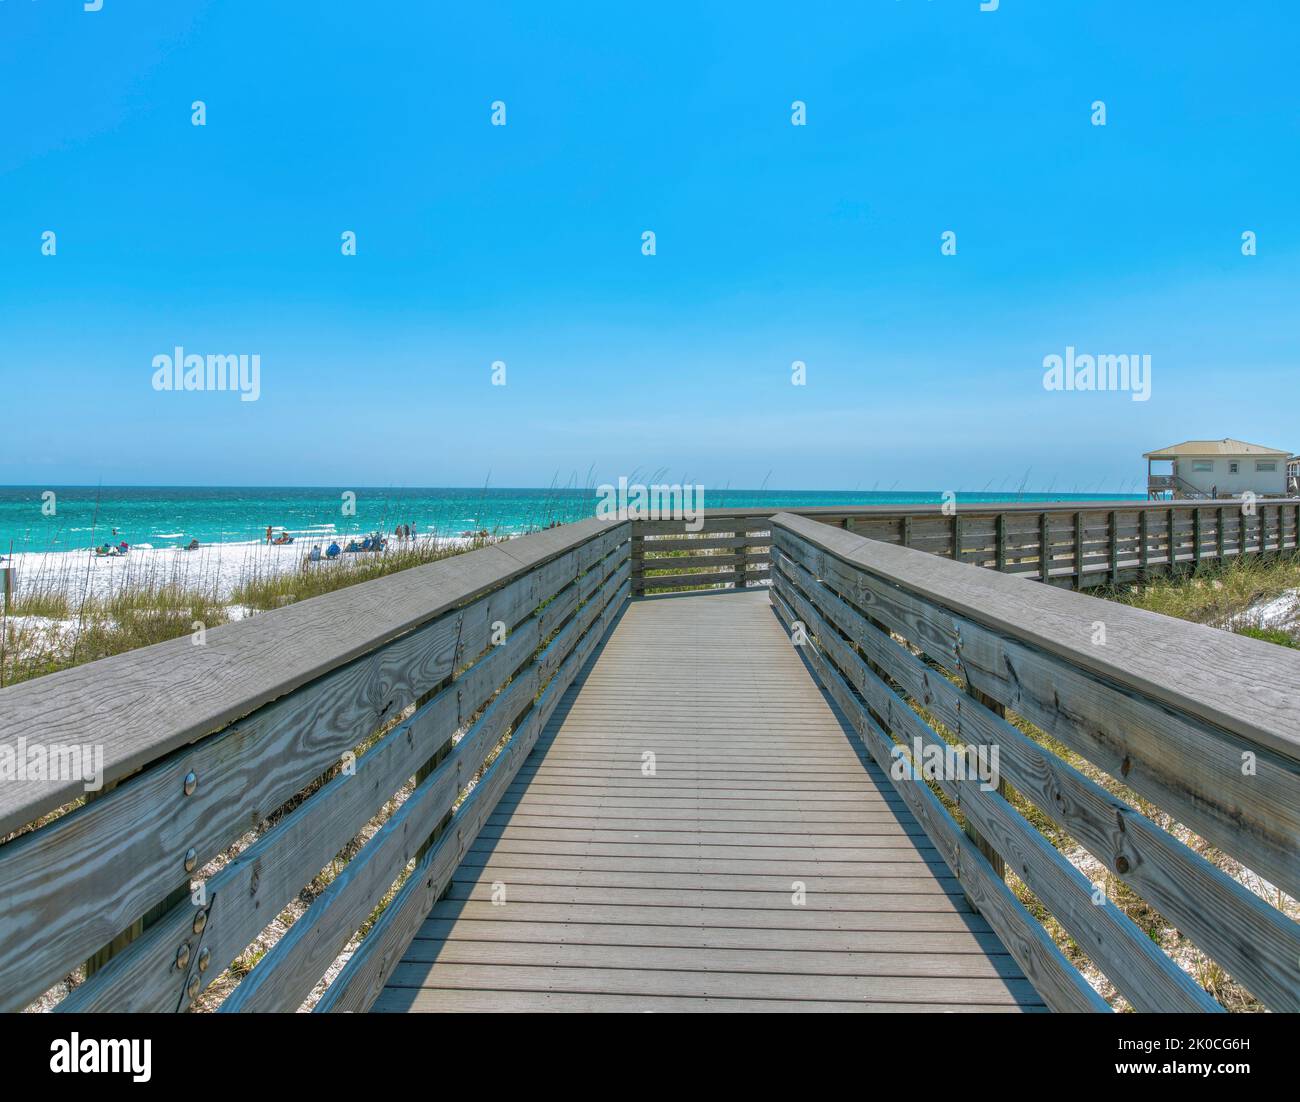 Hölzerne Promenade an einem Strand mit Menschen in Destin, Florida. Promenade mit Blick auf Gräser auf der Seite und Blick auf das blaue Wasser und Strandhaus Stockfoto